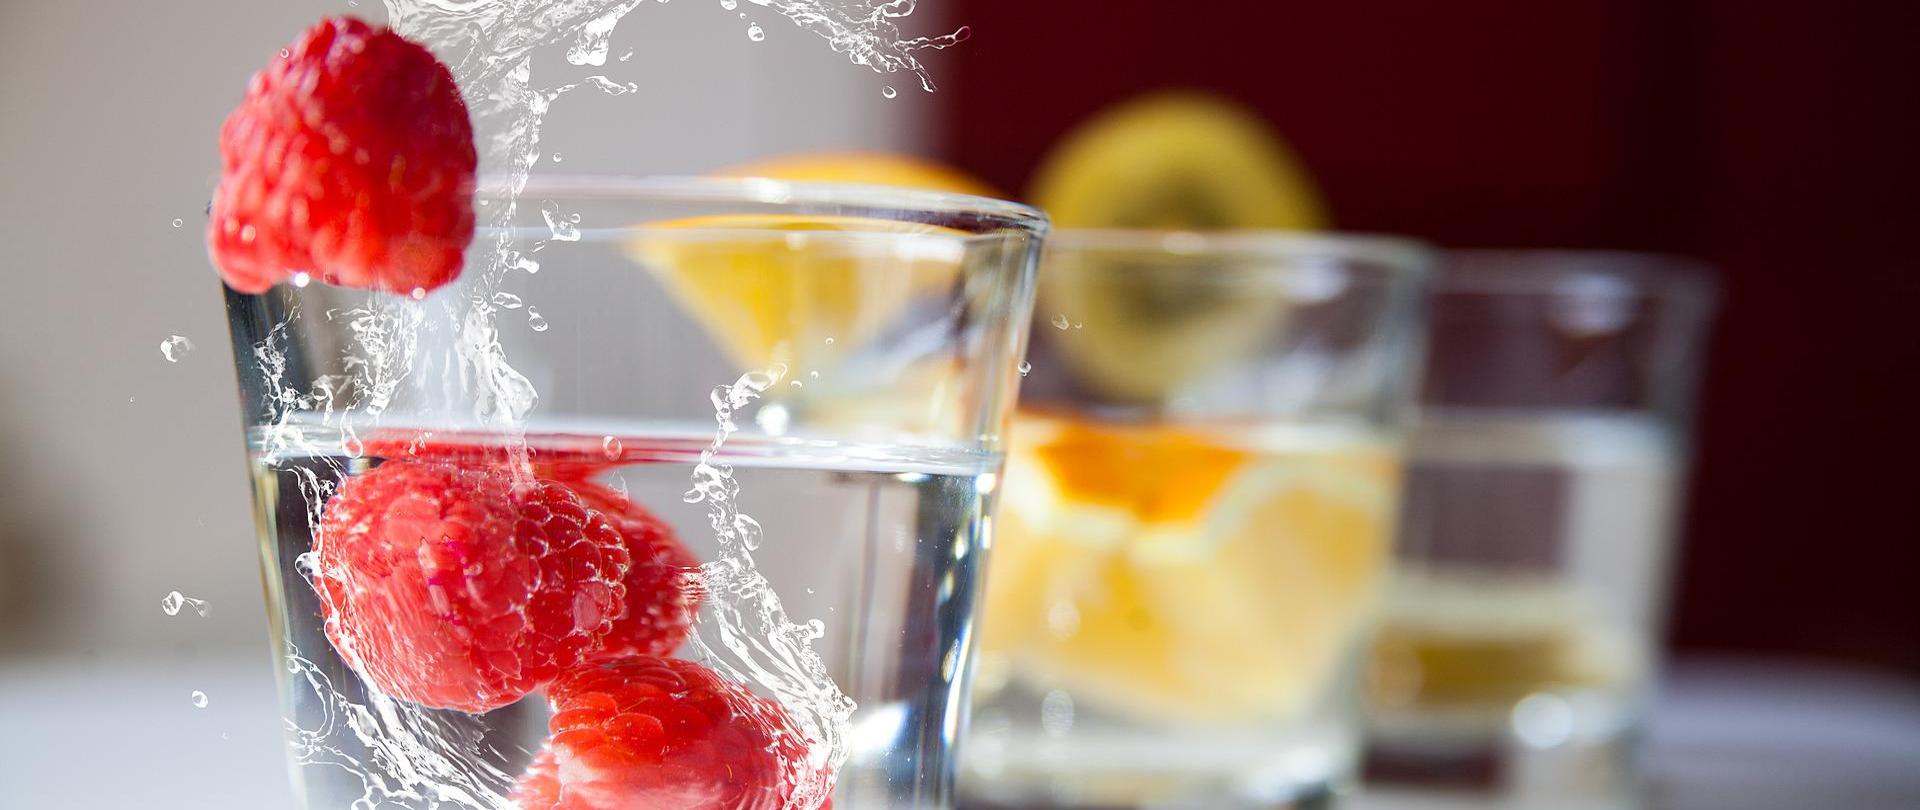 Na zdjęciu znajduje się szklanka z wodą i malinami. W tle (widok rozmazany) są dwie kolejne szklanki z wodą i owocami.